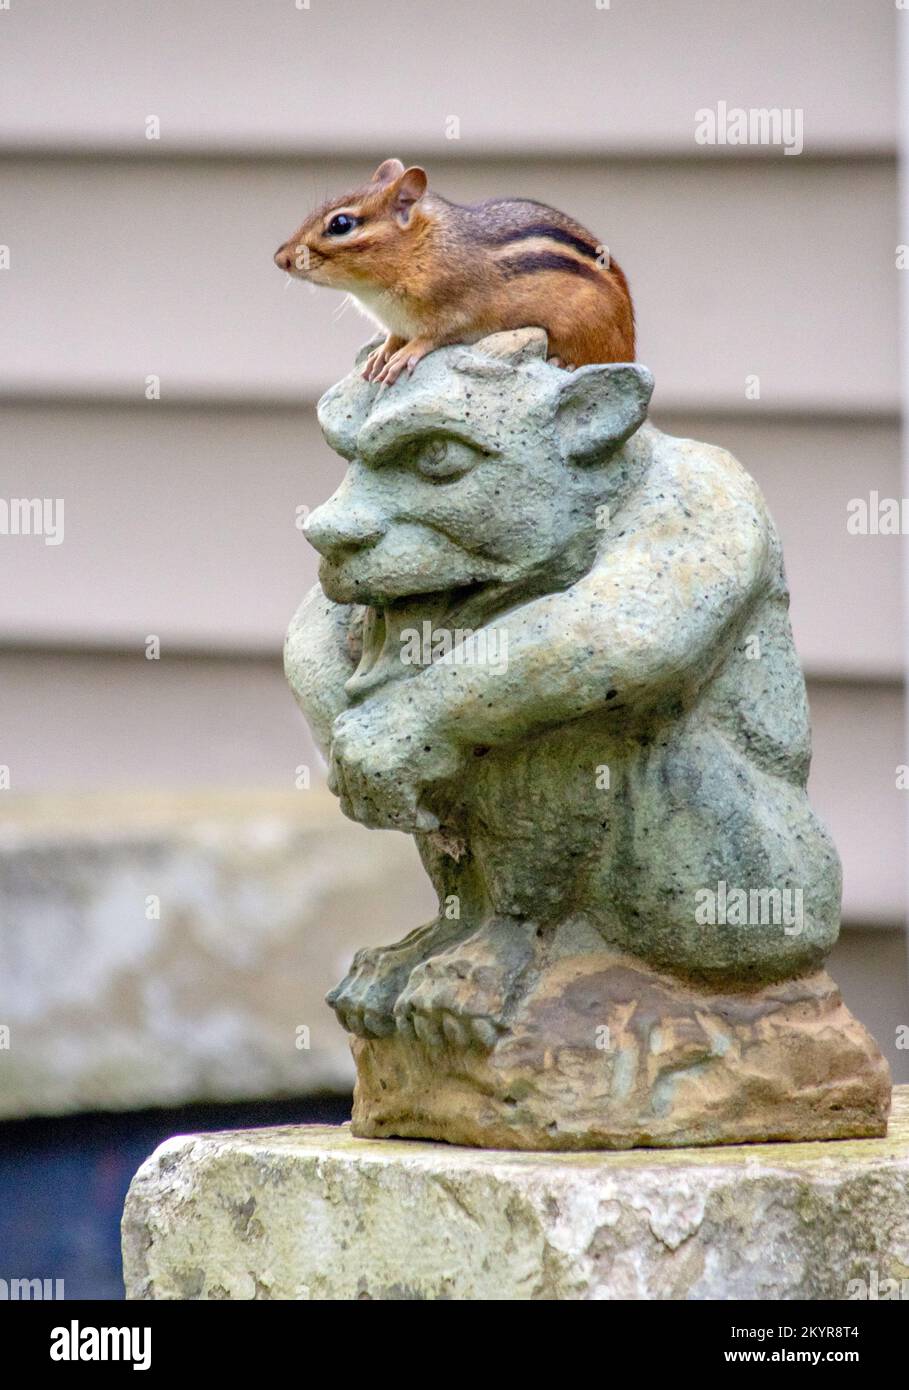 Chipmunk liebt es, auf dieser Gargoyle-Statue auf meiner Veranda zu sitzen, ein guter Ort, um nach Gefahr zu suchen Stockfoto